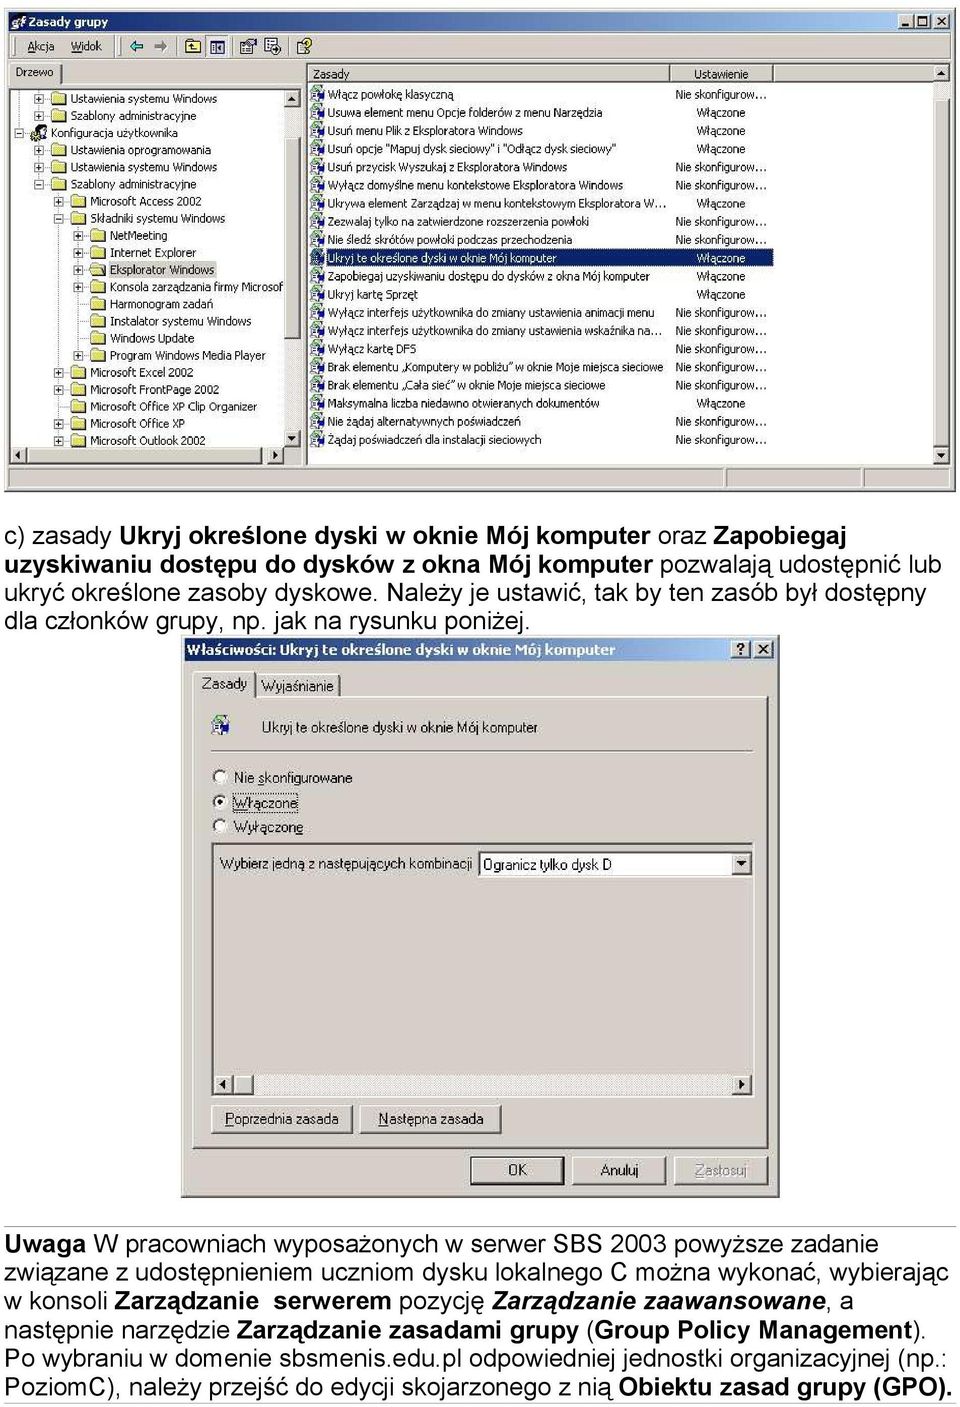 Uwaga W pracowniach wyposażonych w serwer SBS 2003 powyższe zadanie związane z udostępnieniem uczniom dysku lokalnego C można wykonać, wybierając w konsoli Zarządzanie serwerem